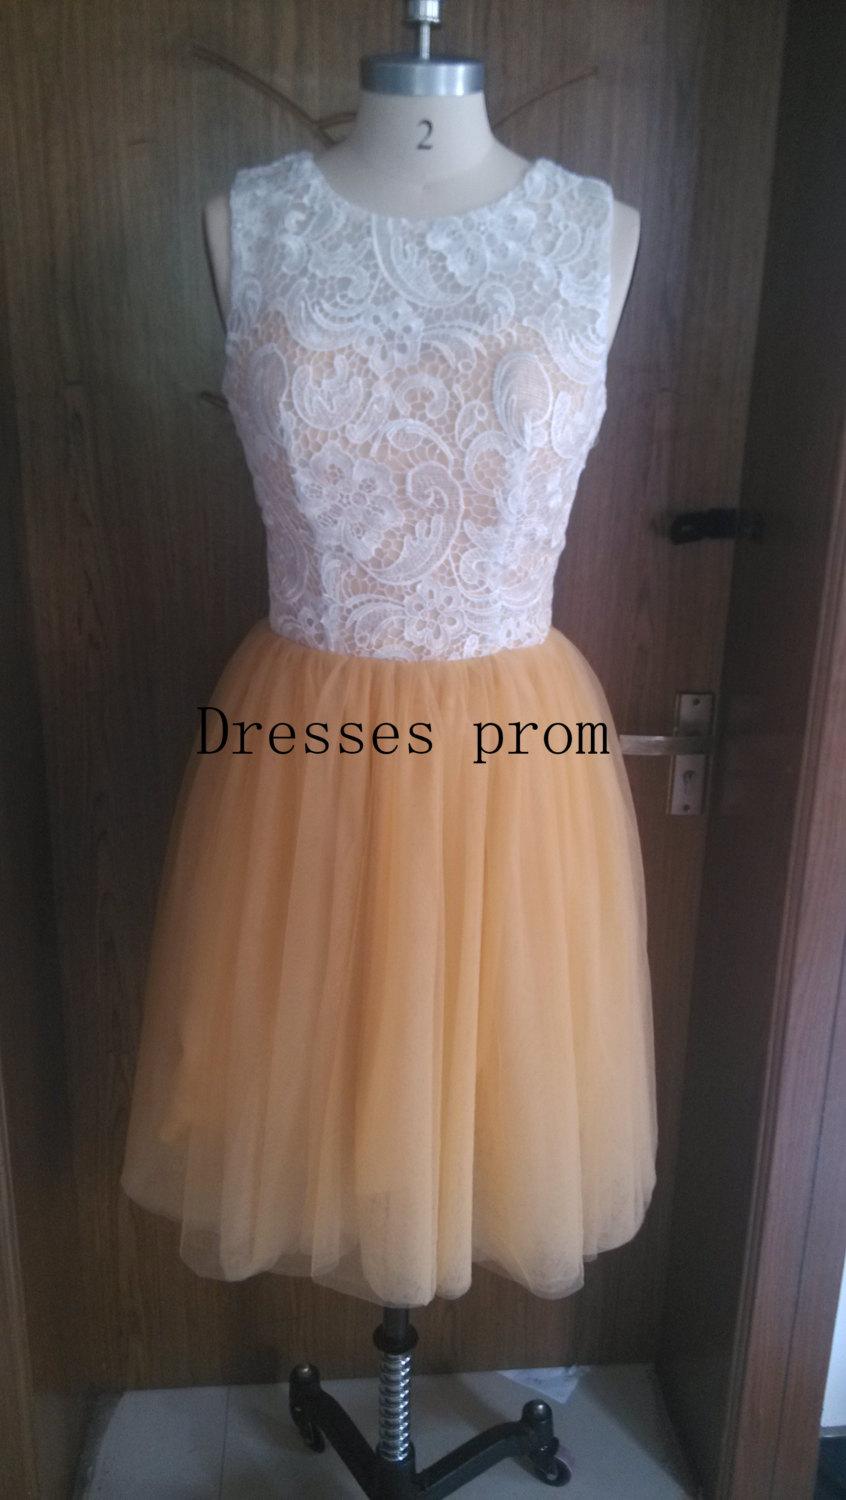 زفاف - Lace Tulle Bridesmaid Dress Tulle Dress Knee Short Dress The Custom Party Dress/gold Bridesmaid Dress/Prom Dress/Formal Dress 2014